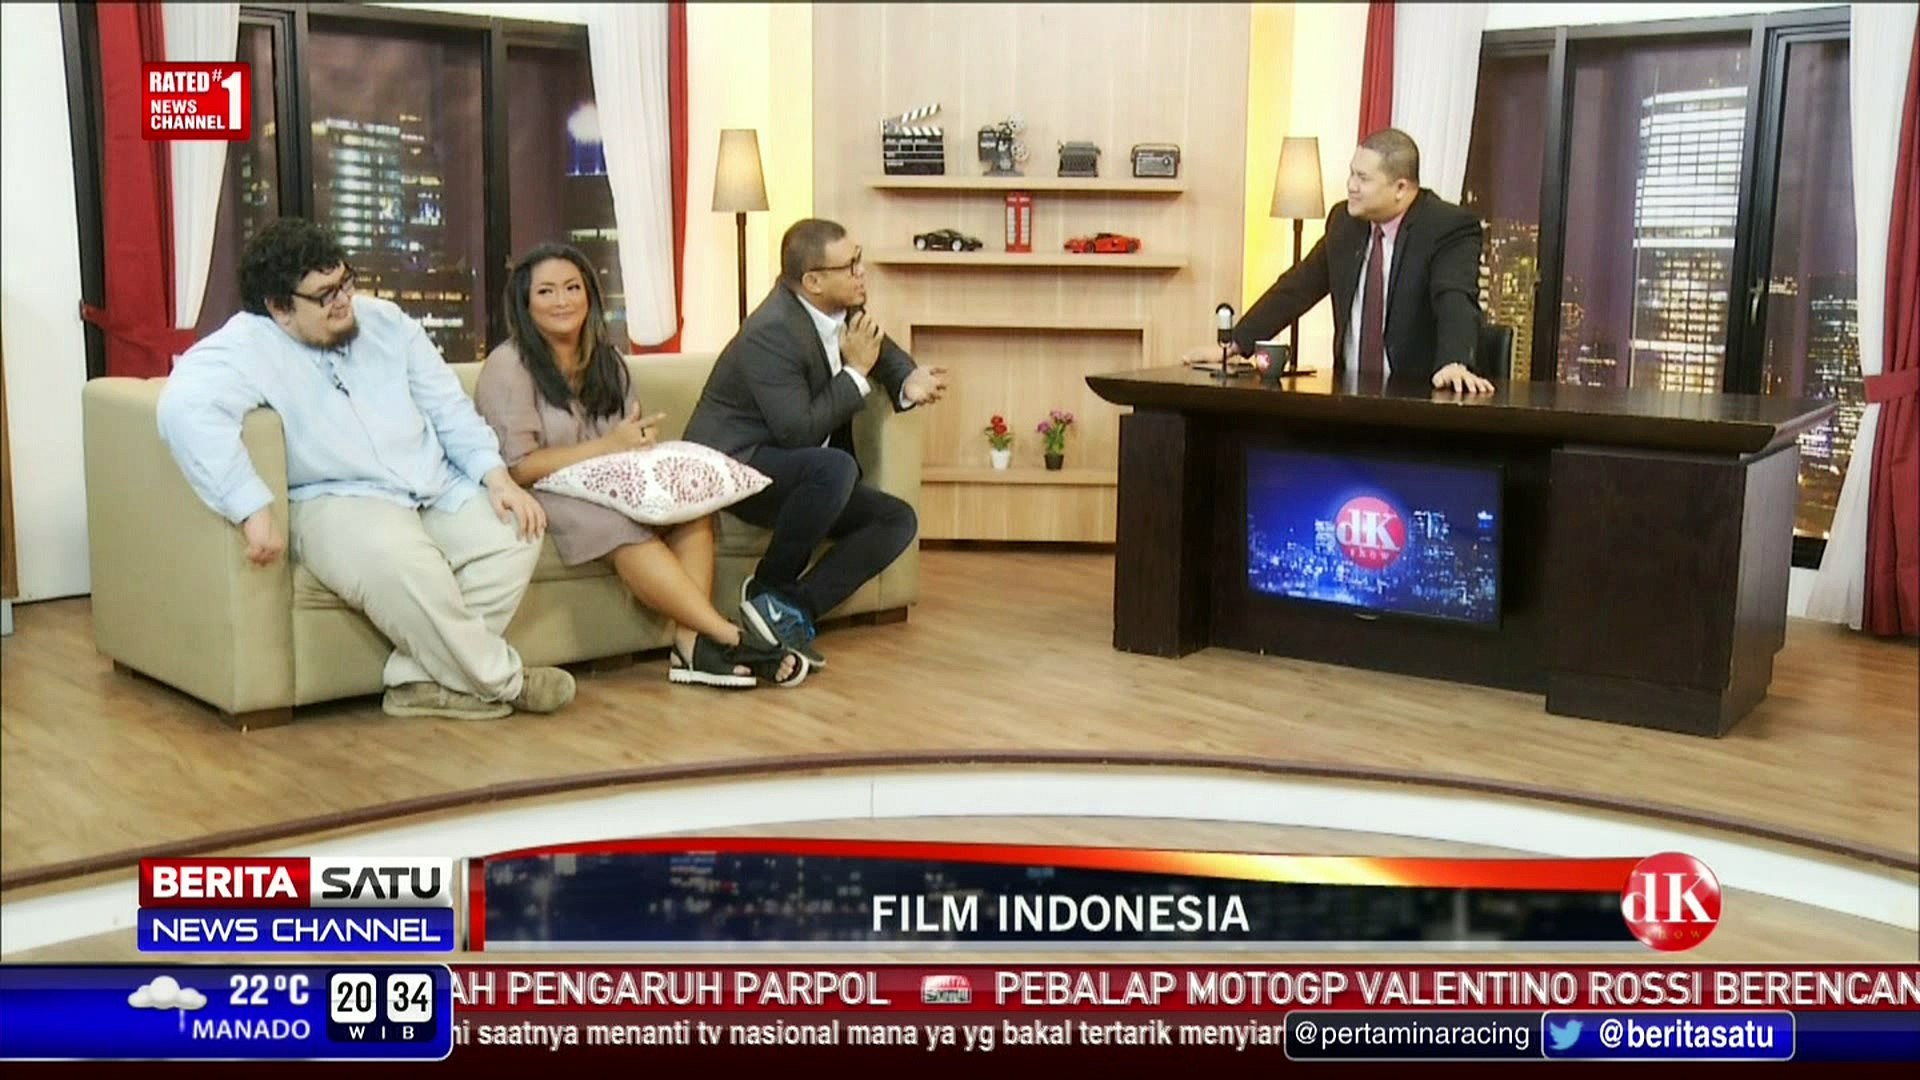 DK Show: Film Indonesia #3